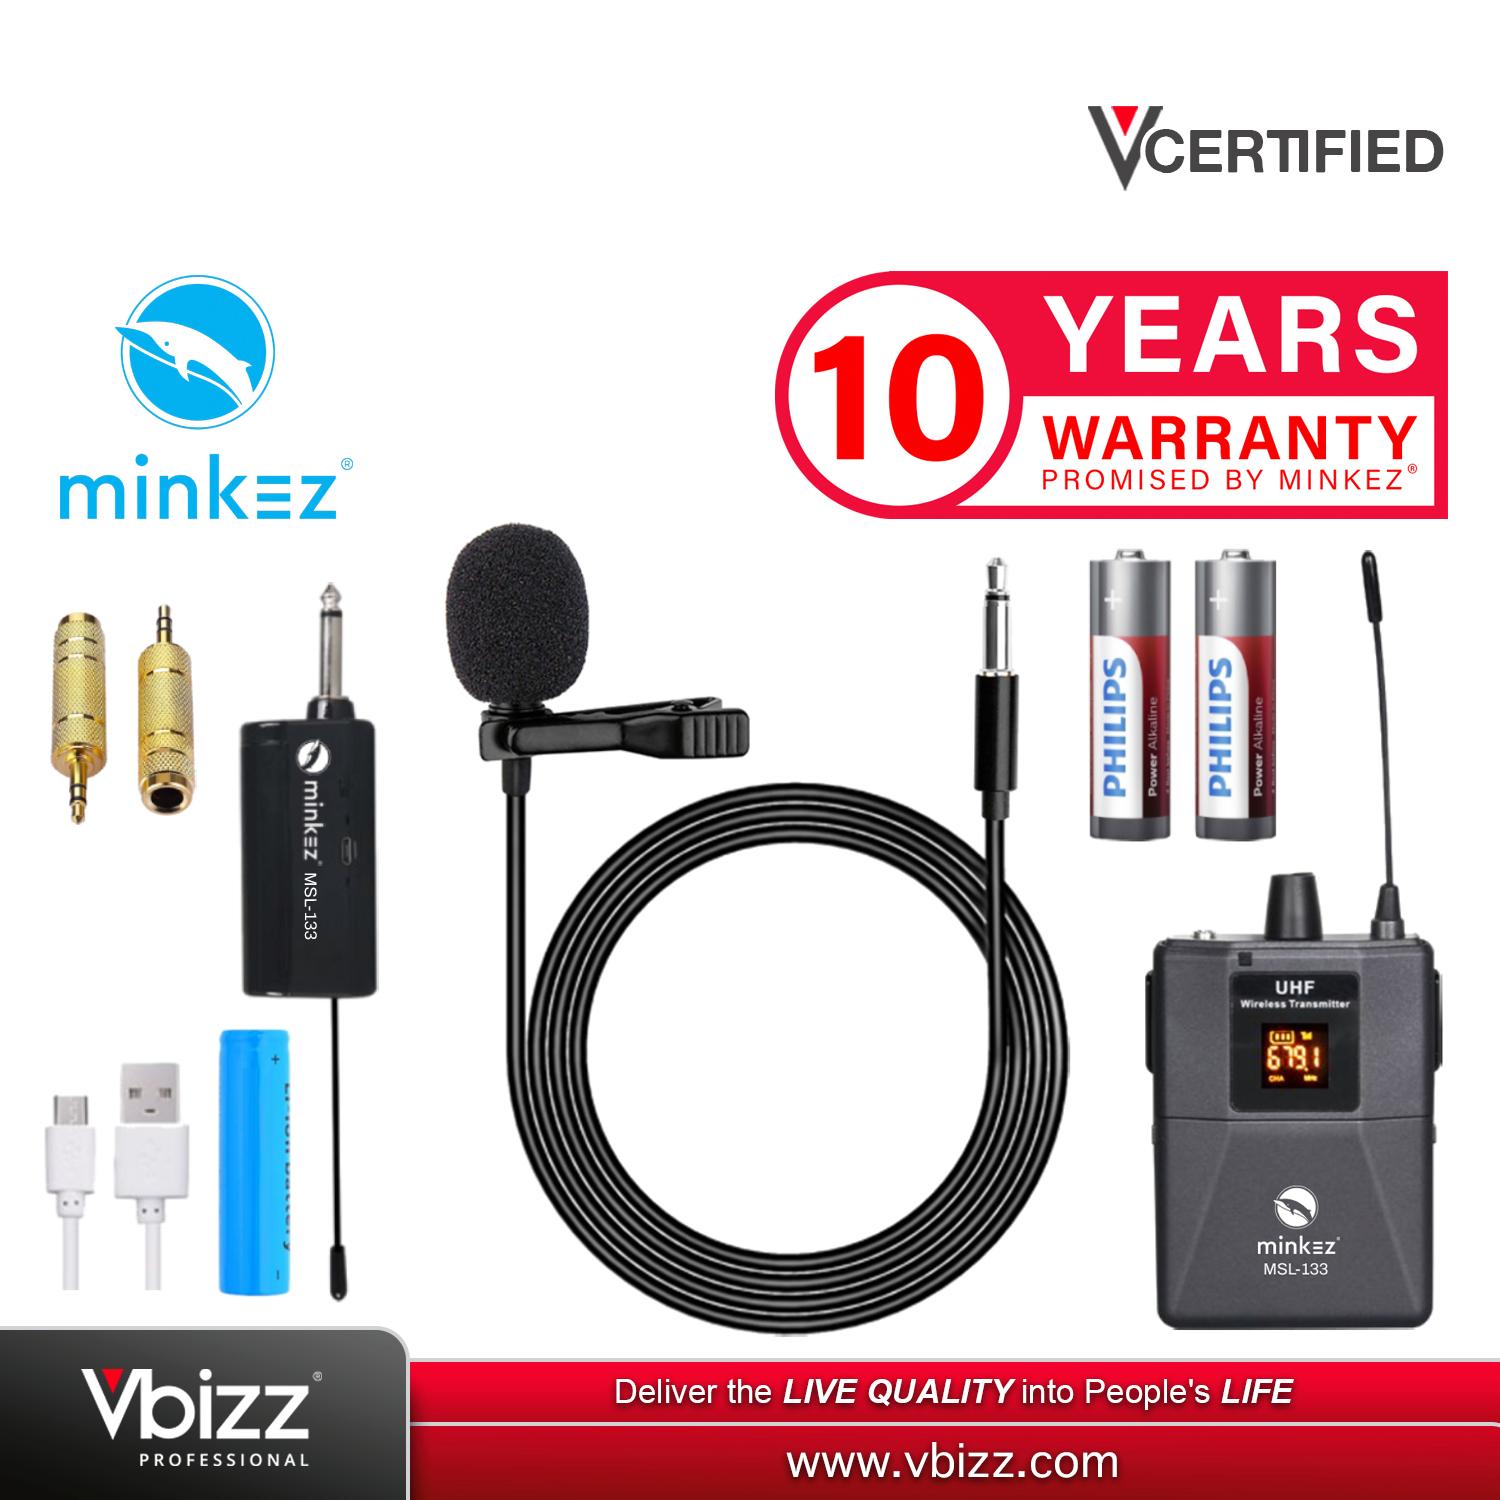 MINKEZ MSL-133 Wireless Microphone Lavalier Lapel Clip Mic